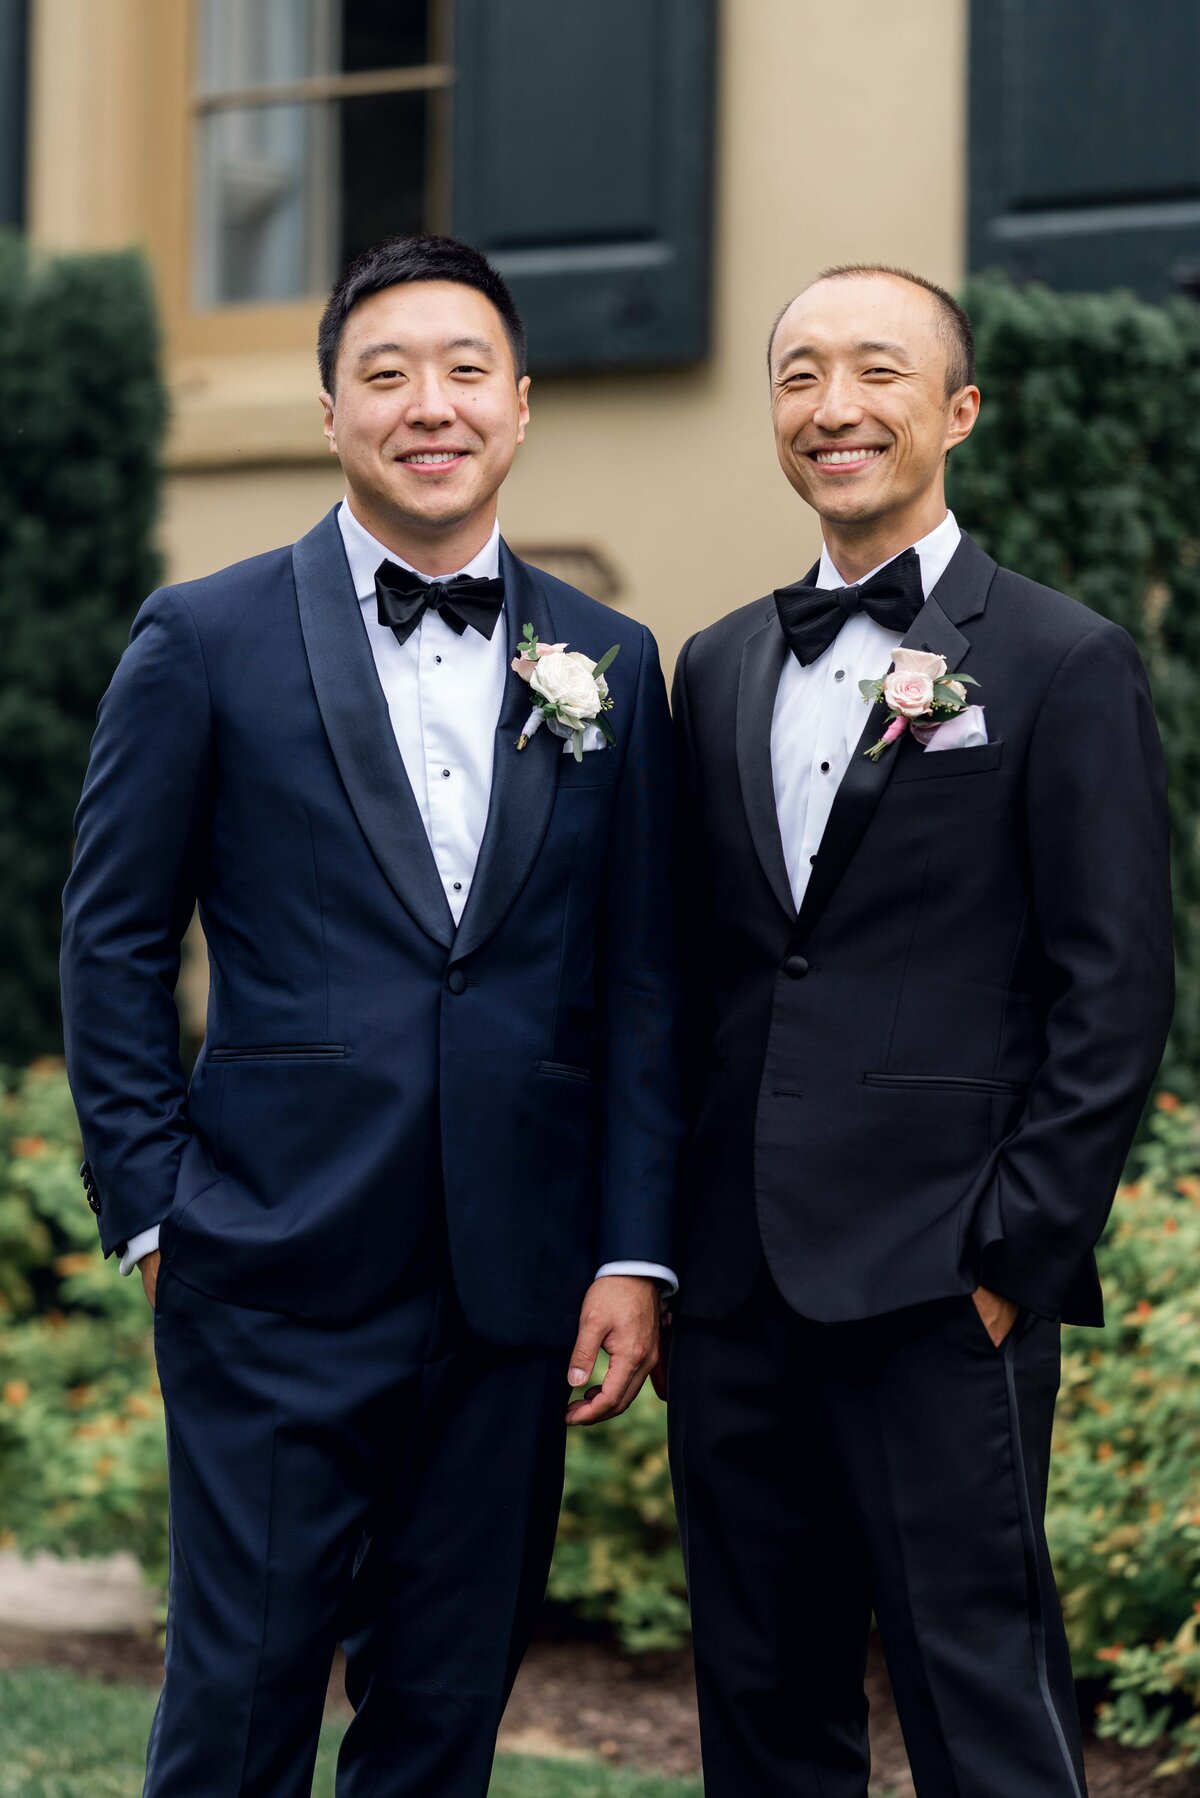 belmont-manor-wedding-baltimore-wedding-photographer-bailey-weddings-asian-american-wedding-karenadixon-2022-248